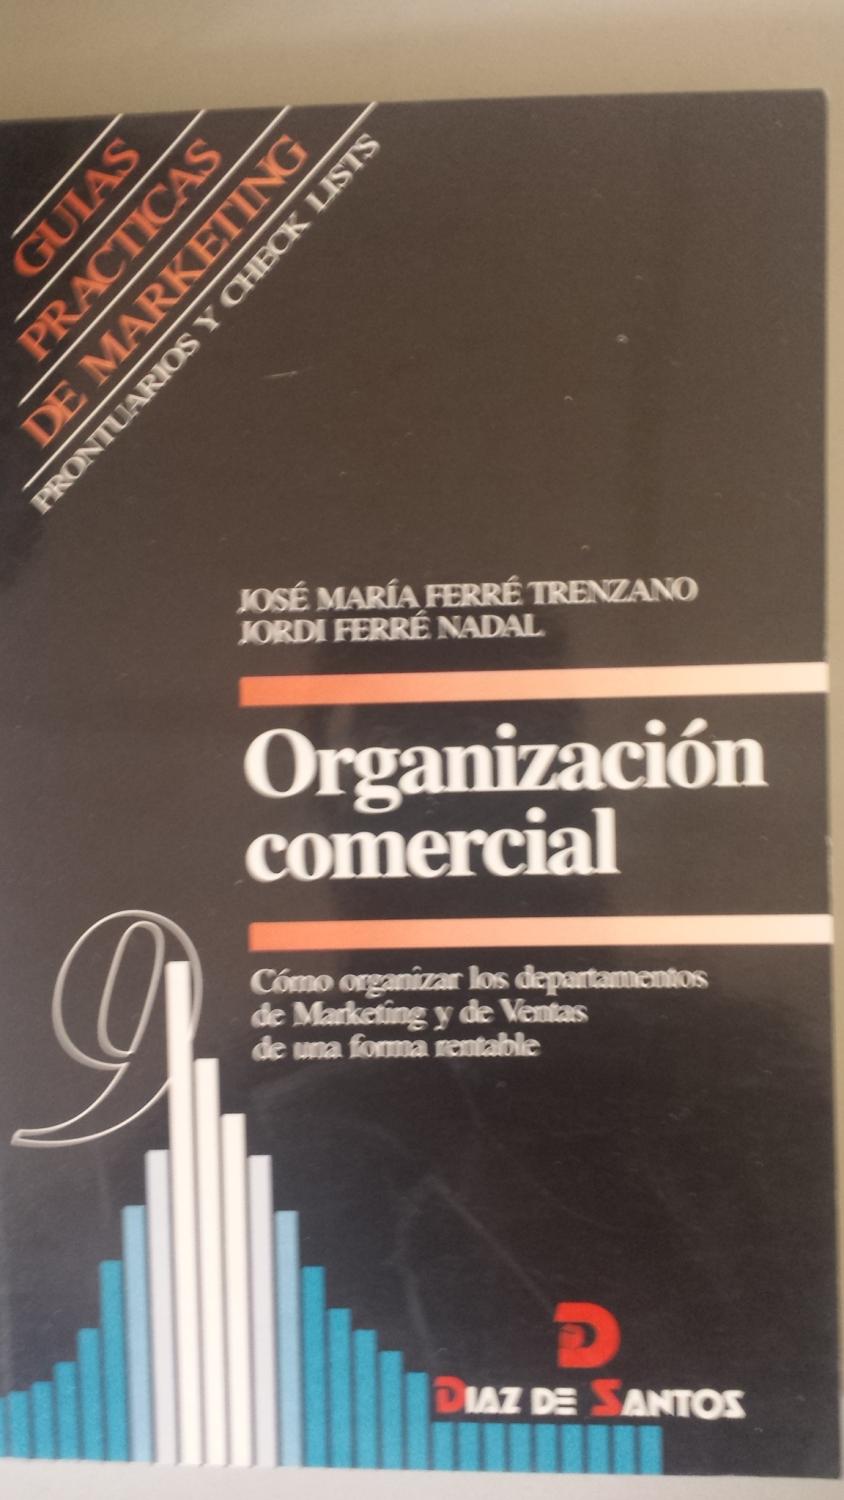 ORGANIZACIÓN COMERCIAL Cómo organizar los departamentos de Marketing y de Ventas de una forma rentable - Ferré Trenzano, José María, Ferré Nadal, Jordi